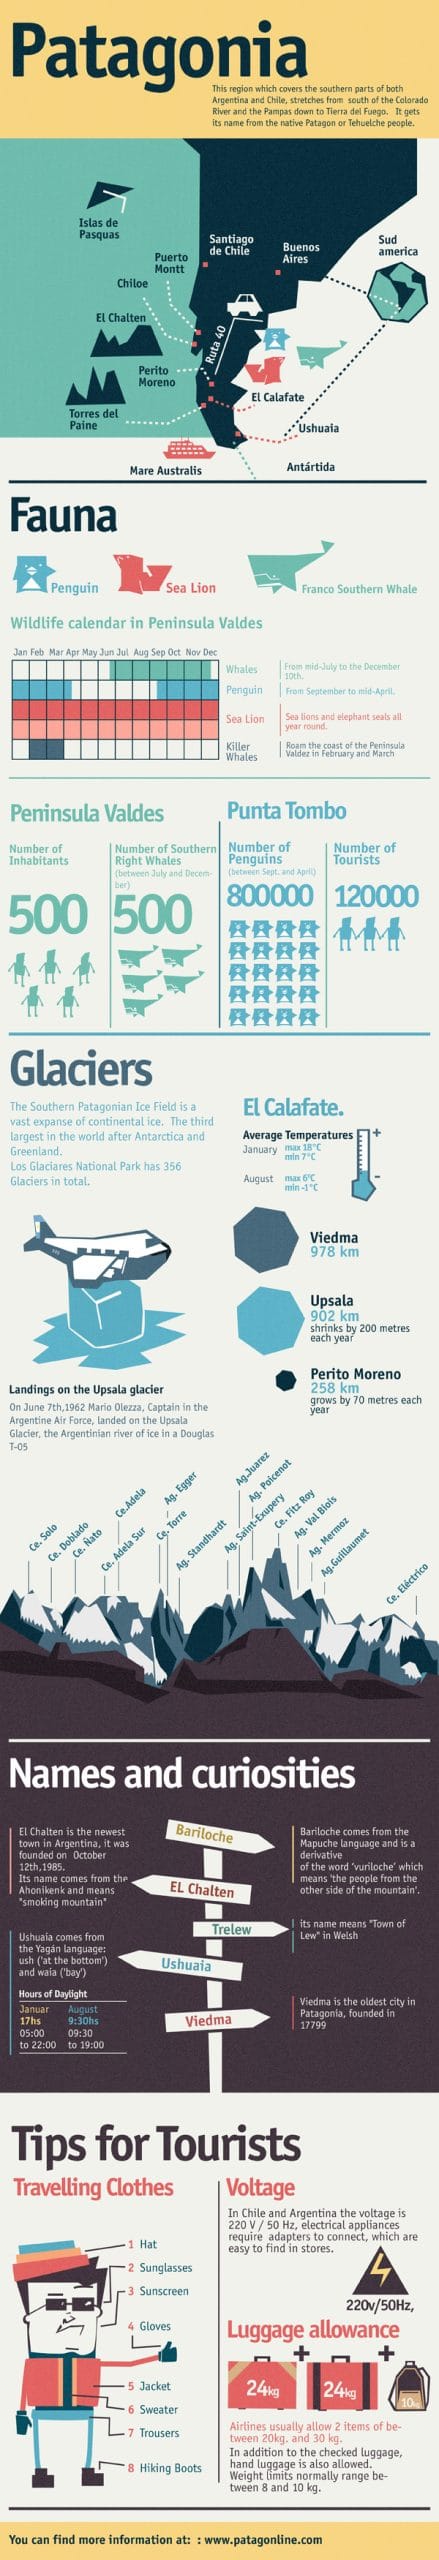 patagonia infografia en scaled Patagonia infographic